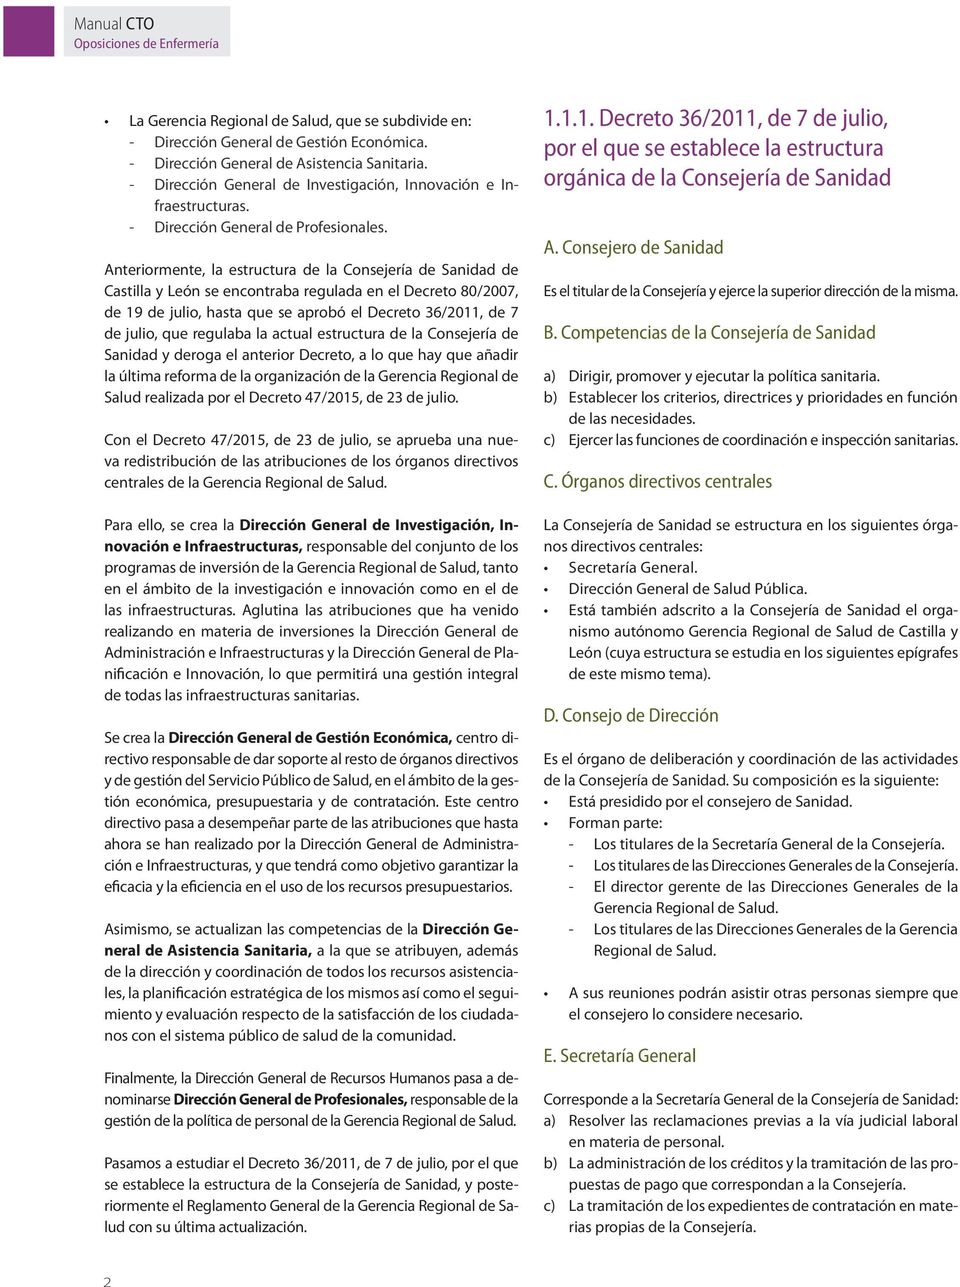 Anteriormente, la estructura de la Consejería de Sanidad de Castilla y León se encontraba regulada en el Decreto 80/2007, de 19 de julio, hasta que se aprobó el Decreto 36/2011, de 7 de julio, que